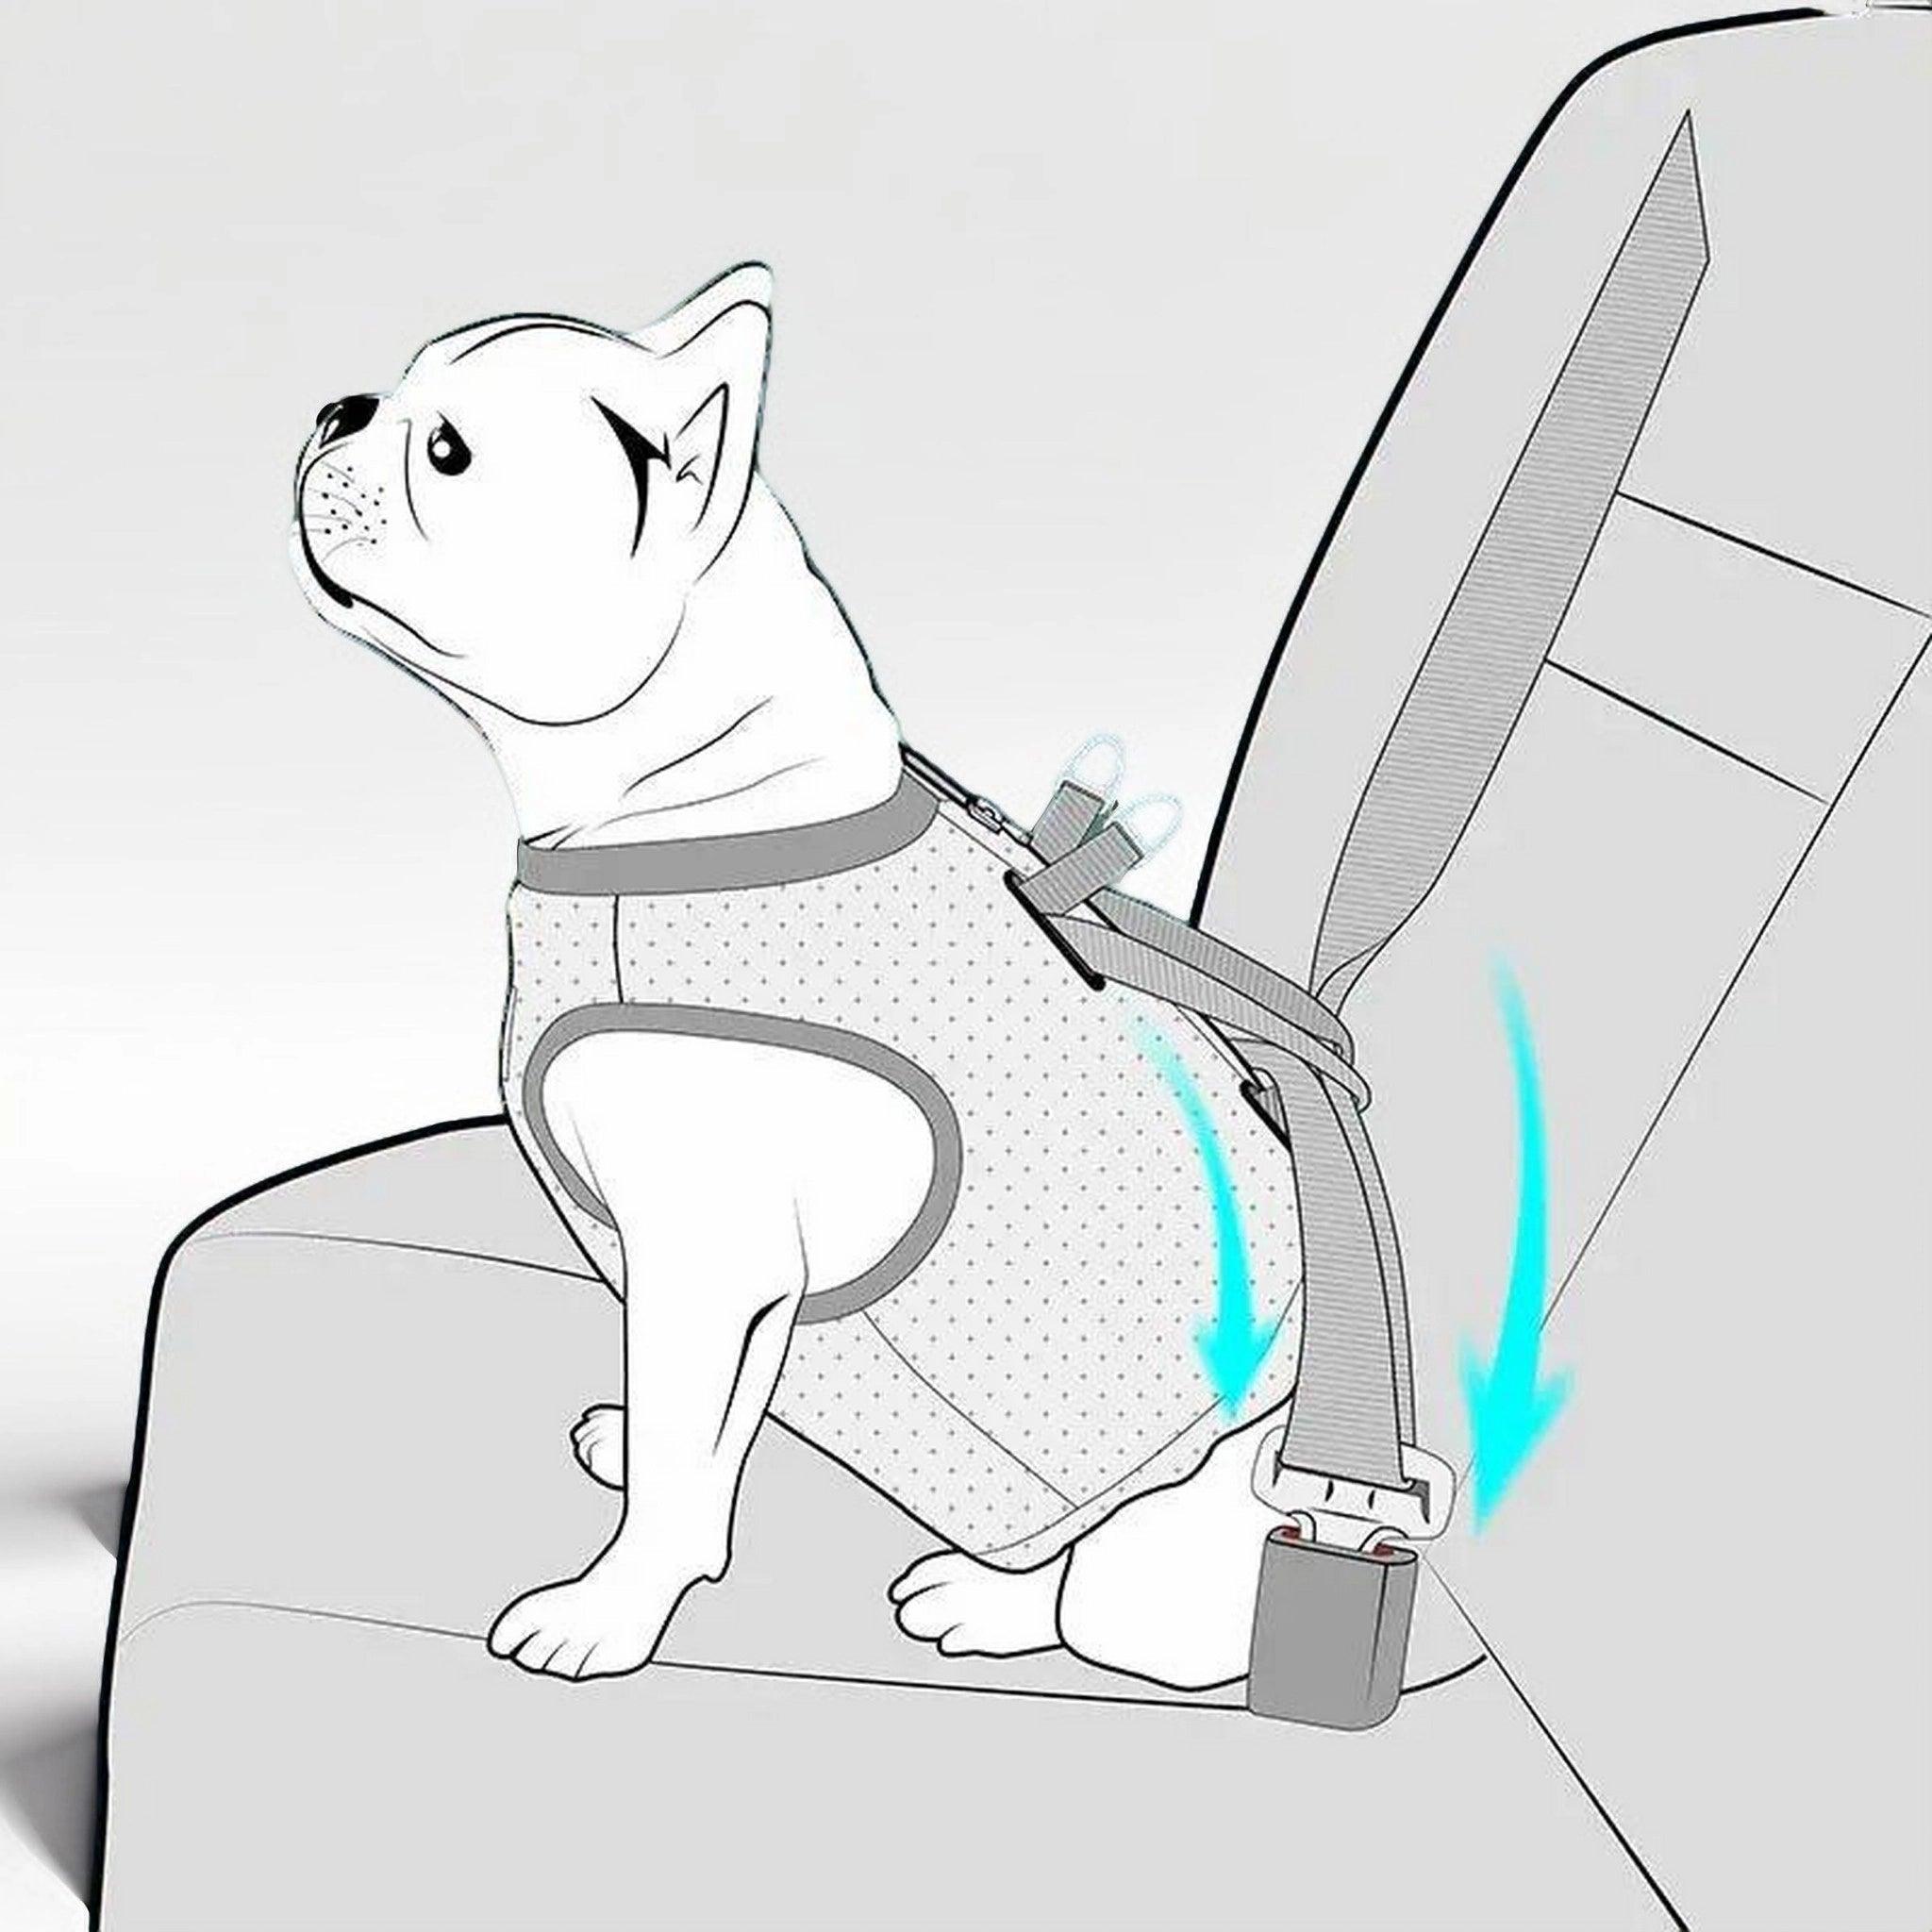 Illustration eines Hundes, der mit einem Truelove-Hundegeschirr sicher auf dem Autositz befestigt ist. pet-shop24